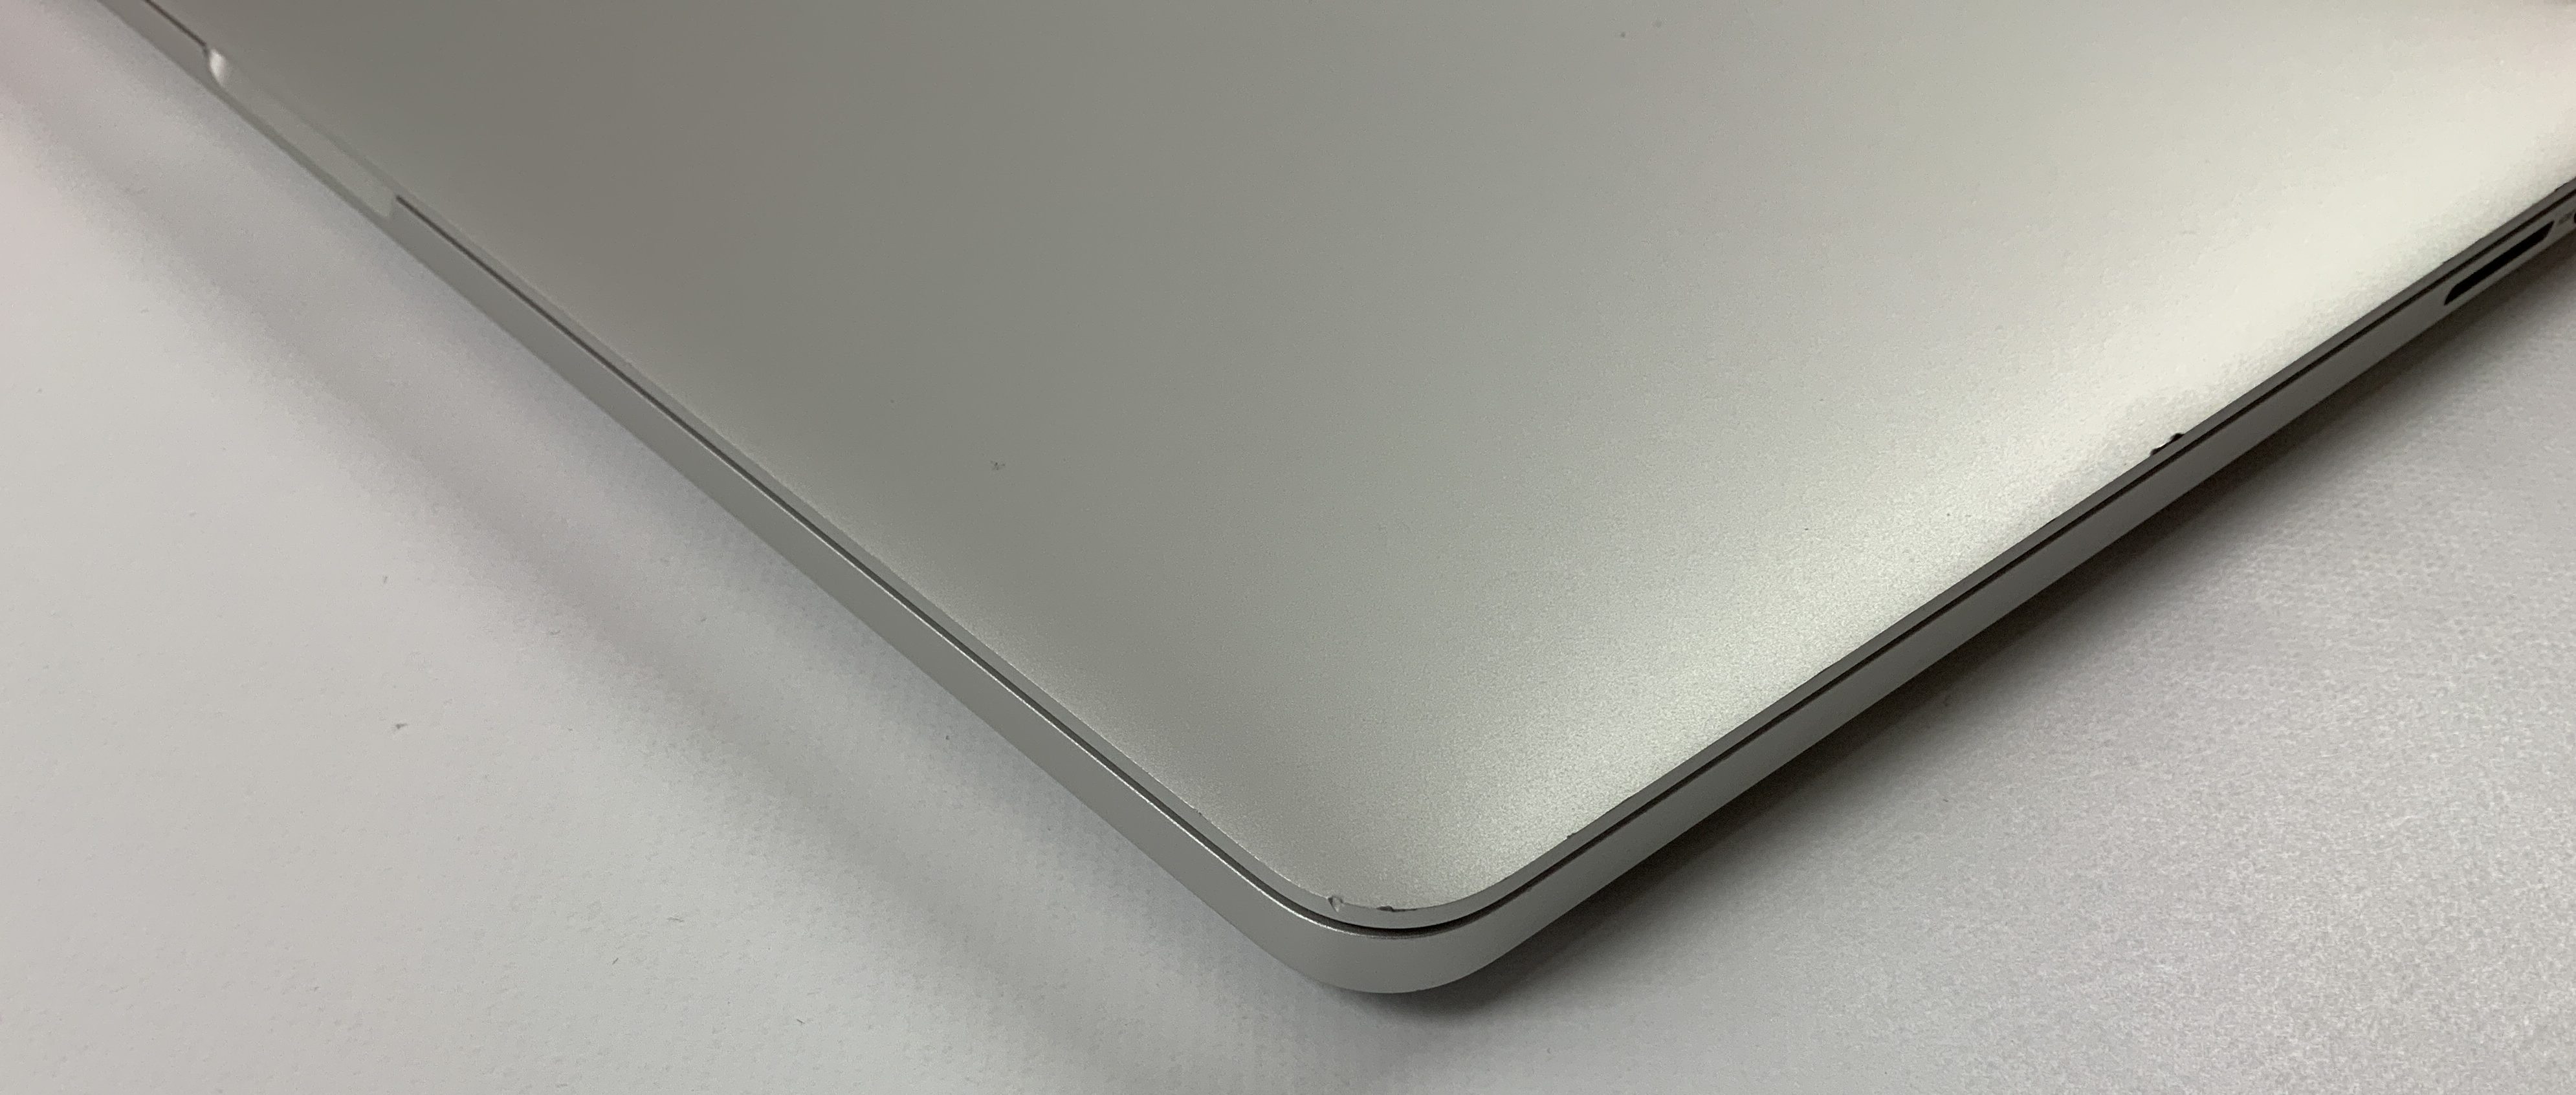 MacBook Pro Retina 15" Mid 2015 (Intel Quad-Core i7 2.2 GHz 16 GB RAM 256 GB SSD), Intel Quad-Core i7 2.2 GHz, 16 GB RAM, 256 GB SSD, Kuva 4